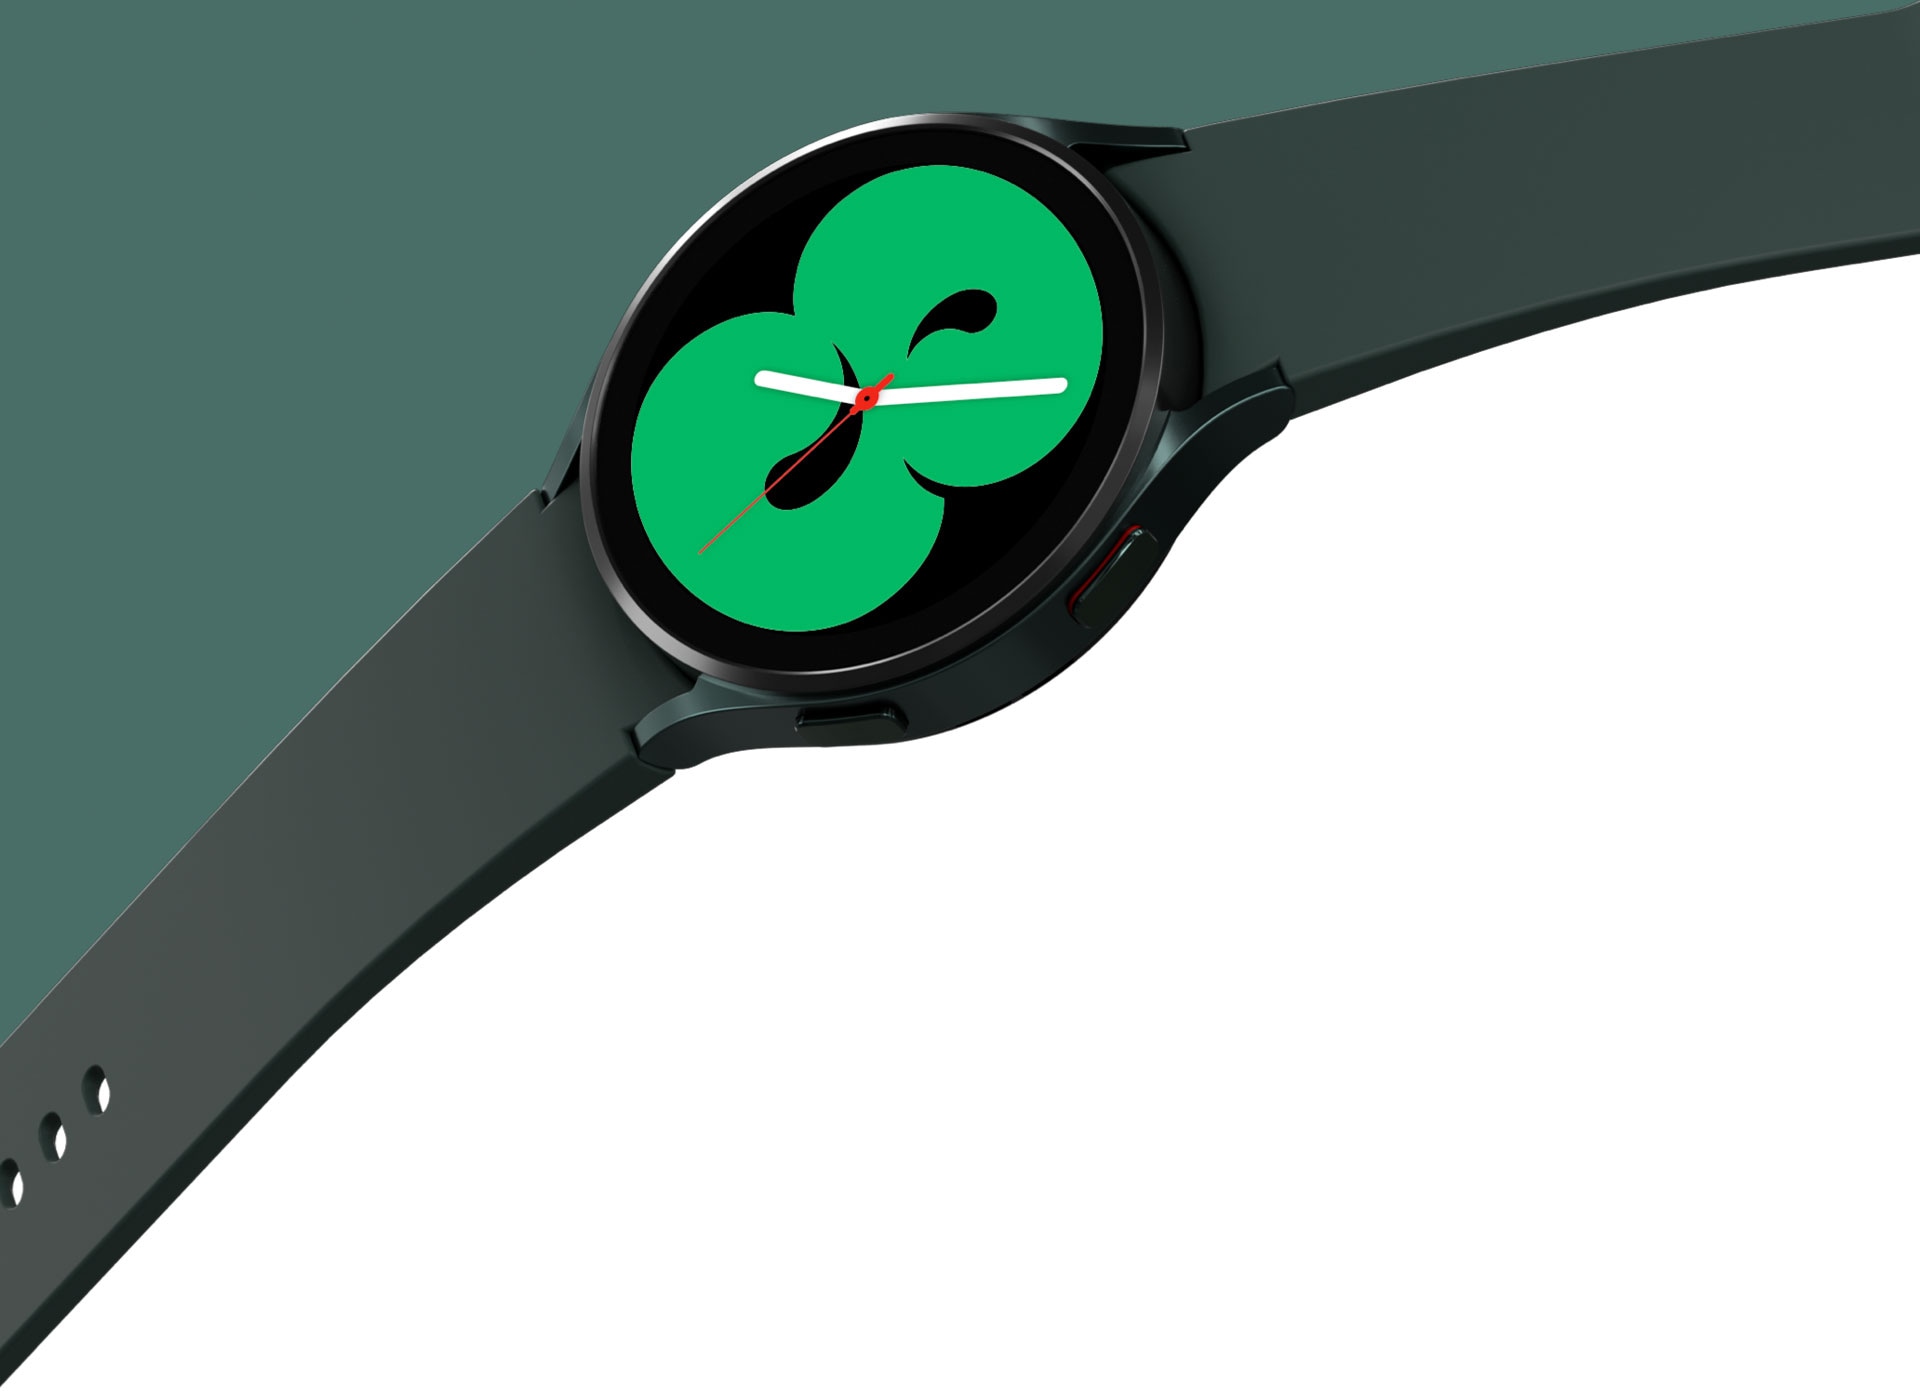 Un Galaxy Watch4 verde se muestra con una banda que se extiende. La esfera del reloj muestra uno de los diseños que muestra la hora en color verde.